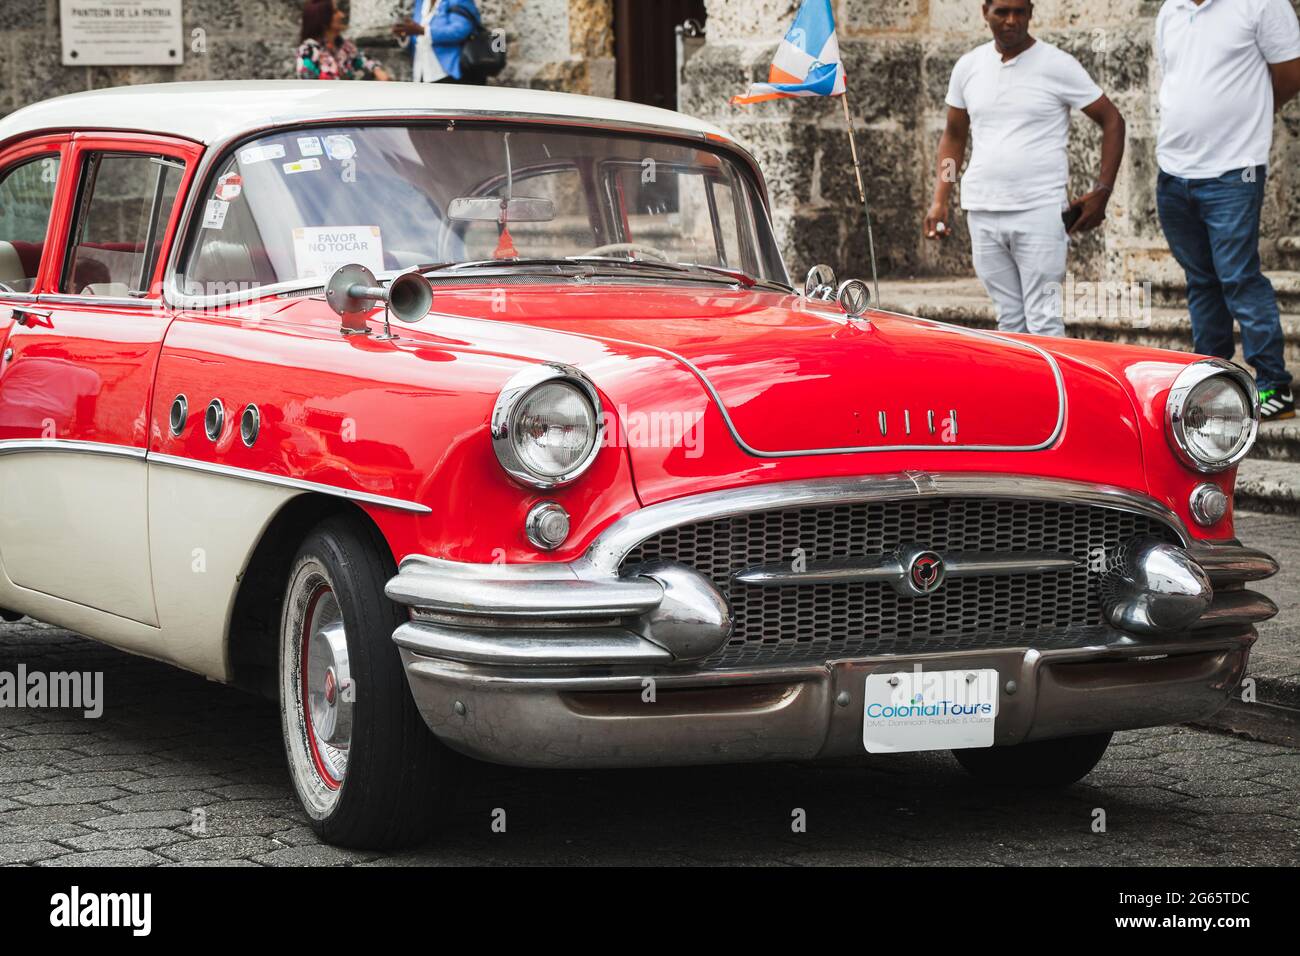 Santo Domingo, Dominican Republic - January 11, 2020: Red oldtimer. Vintage 1955 Buick Special Sedan car, Model 41 Stock Photo